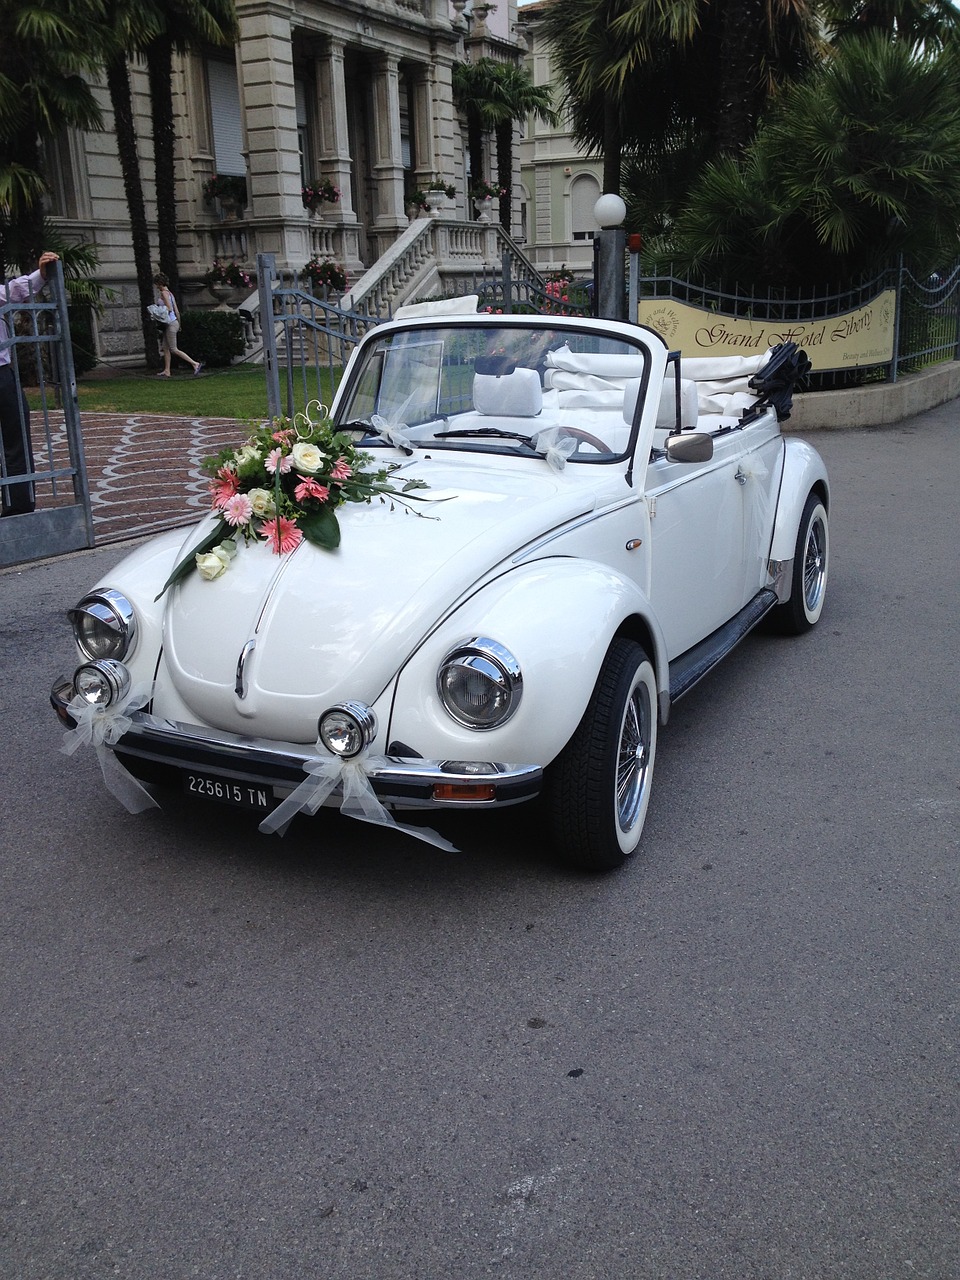 oldtimer vw beetle vehicle free photo